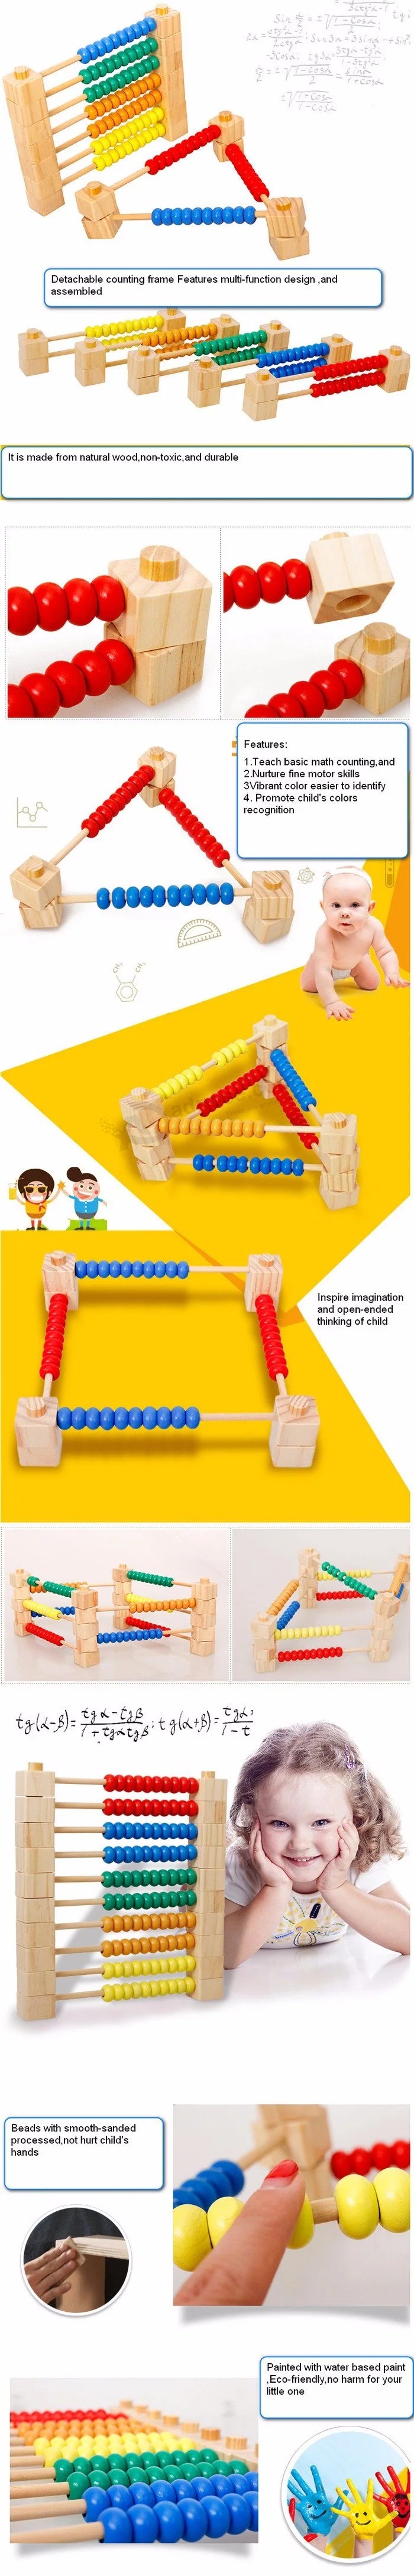 Интеллектуальное развитие математики DIY деревянный лабиринт из бисера дошкольная развивающая игрушка (GY-0004)